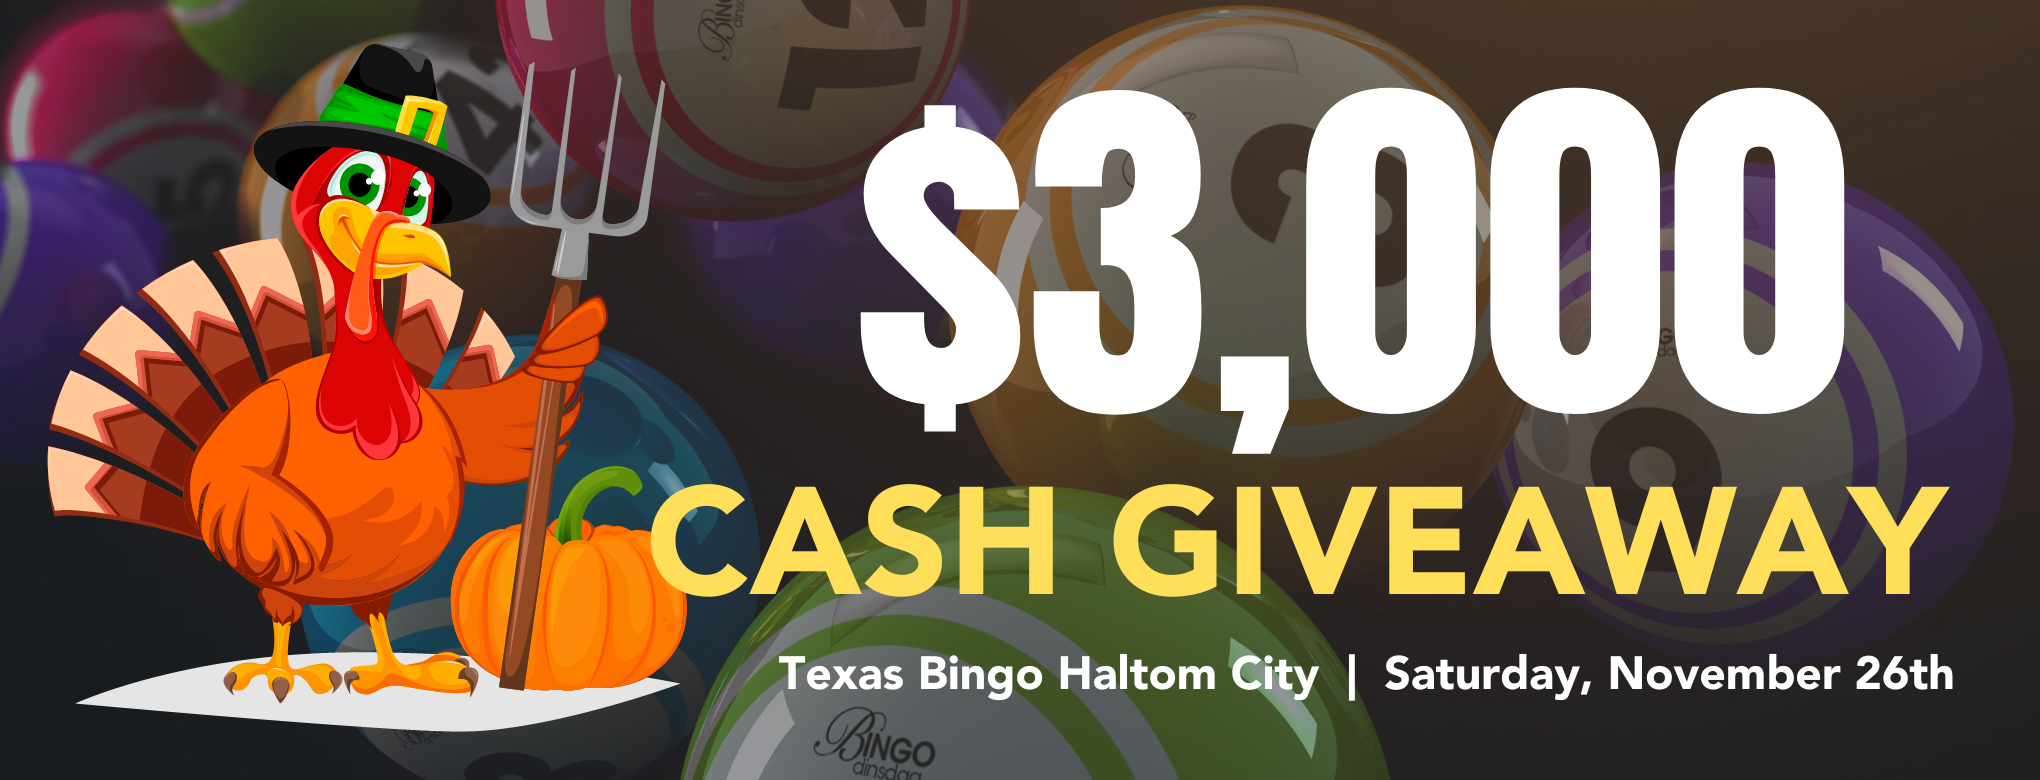 $3,000.00 Haltom City Cash GiveAway